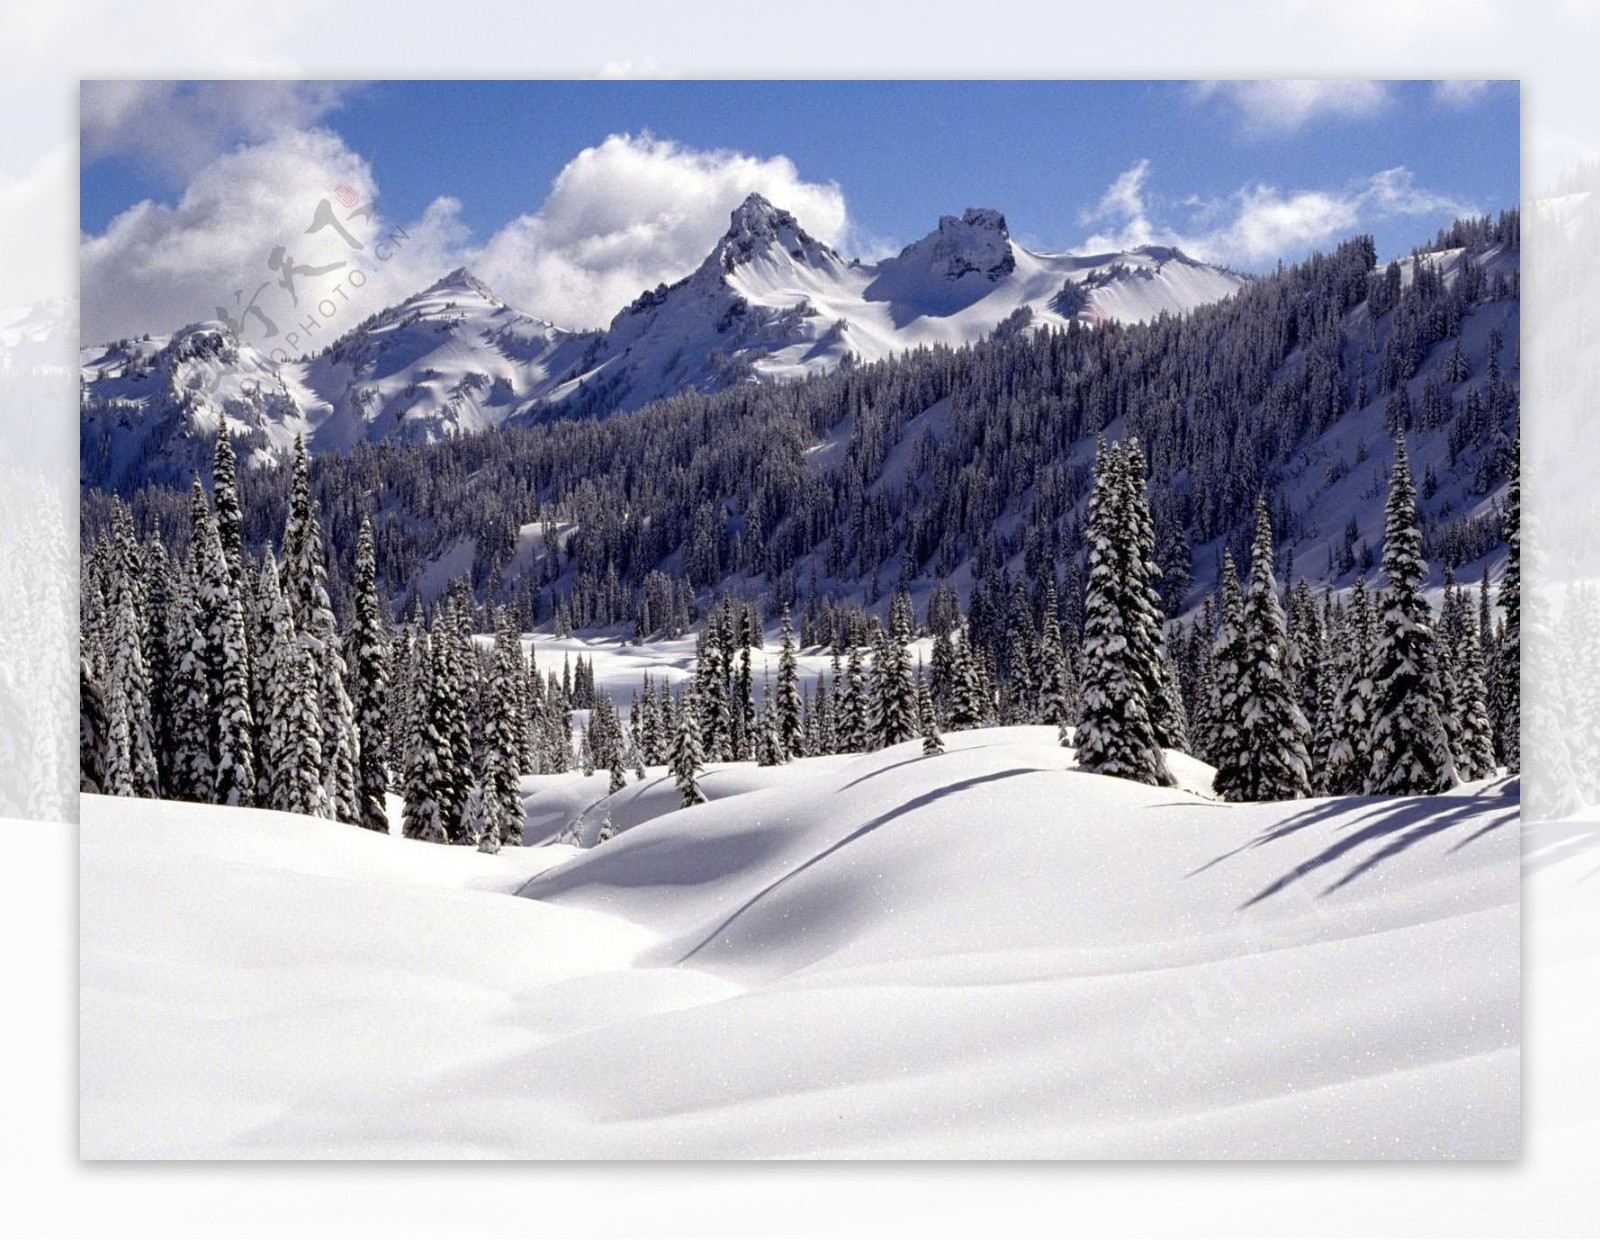 唯美冬日雪景纯白绝美